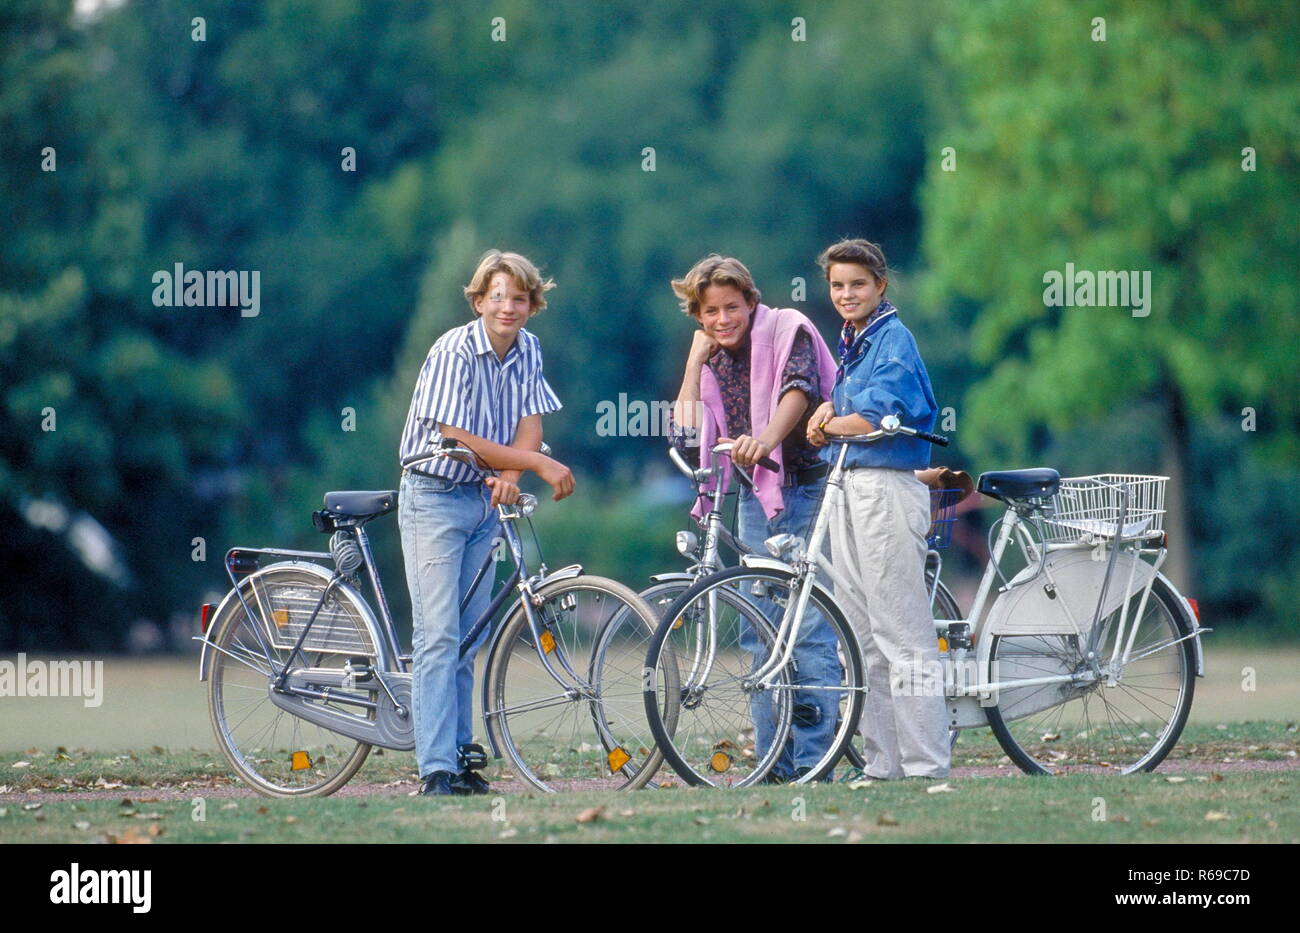 Parkszene, Gruppe von Jugendlichen 3 im Alter von 14-16 Jahren mit ihren Fahrraedern Banque D'Images